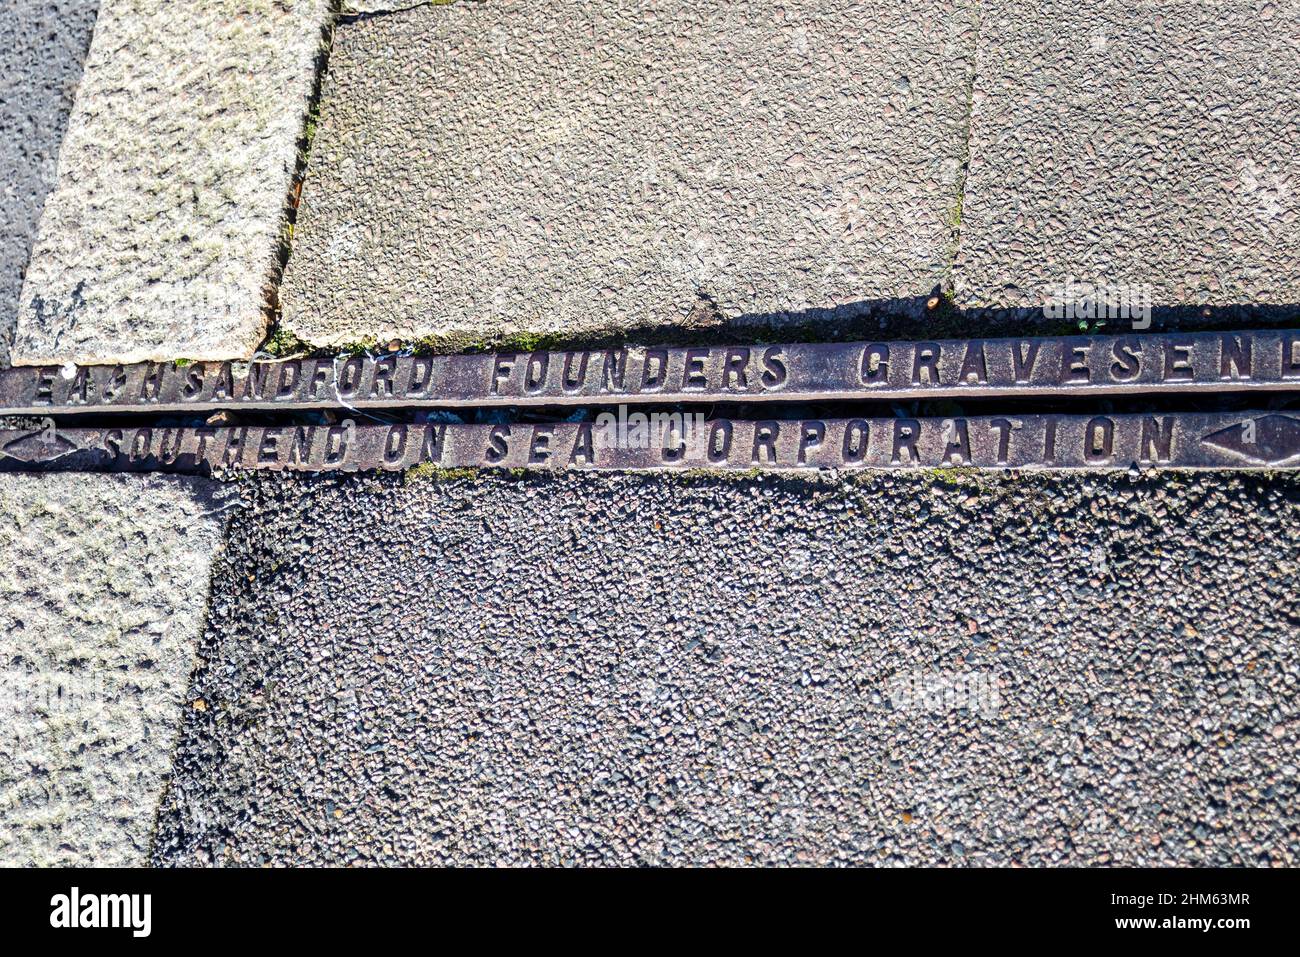 Southend on Sea Corporation, a & H Sandford Founders of Gravesend, canal de drainage d'époque à Southend on Sea, Essex. Ancienne fonte usée Banque D'Images